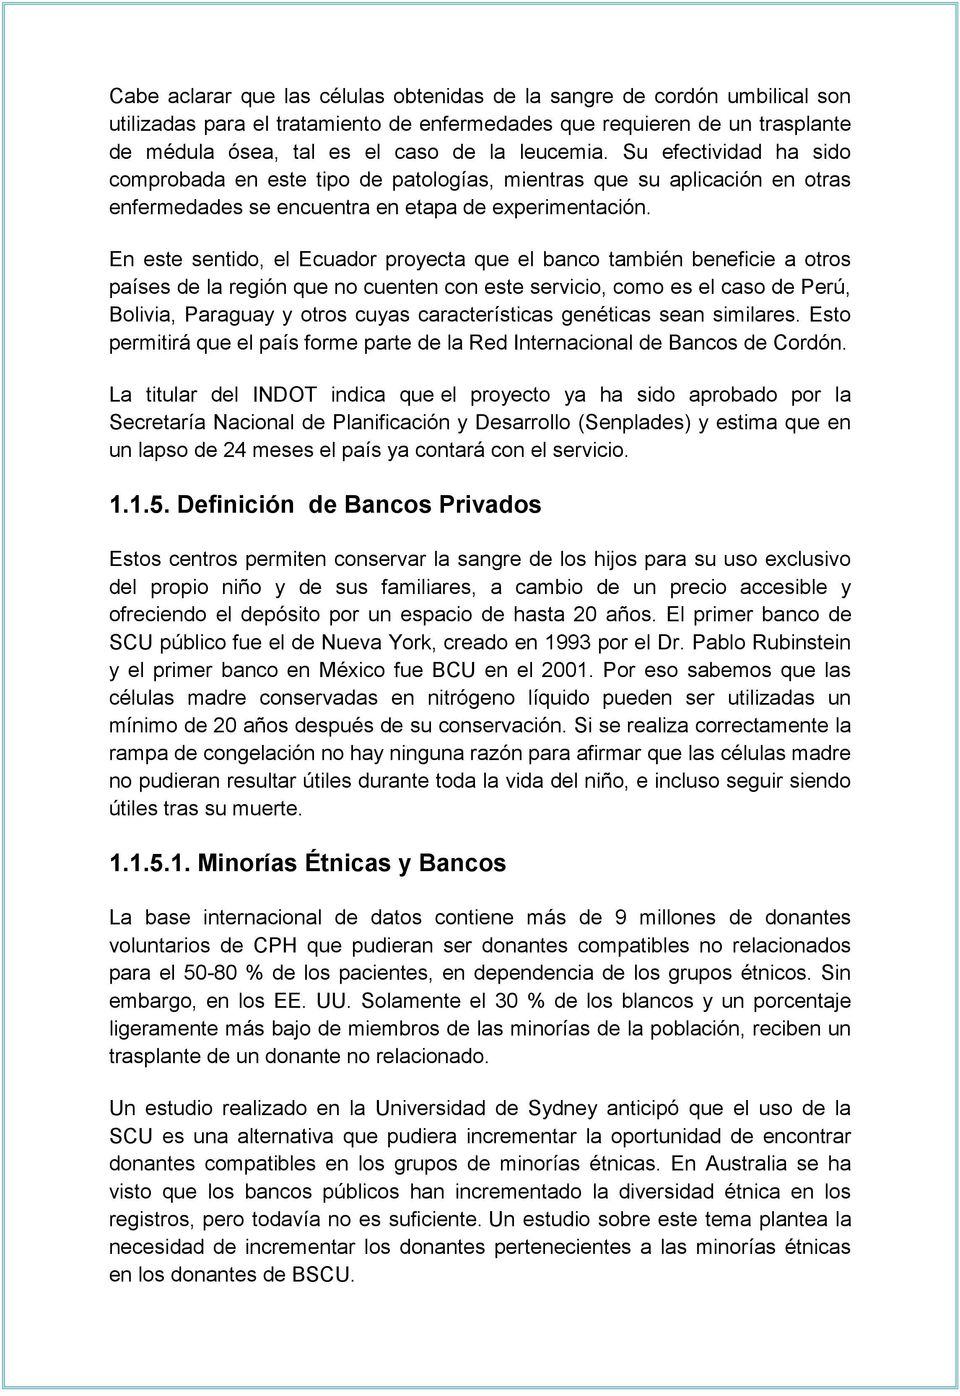 En este sentido, el Ecuador proyecta que el banco también beneficie a otros países de la región que no cuenten con este servicio, como es el caso de Perú, Bolivia, Paraguay y otros cuyas